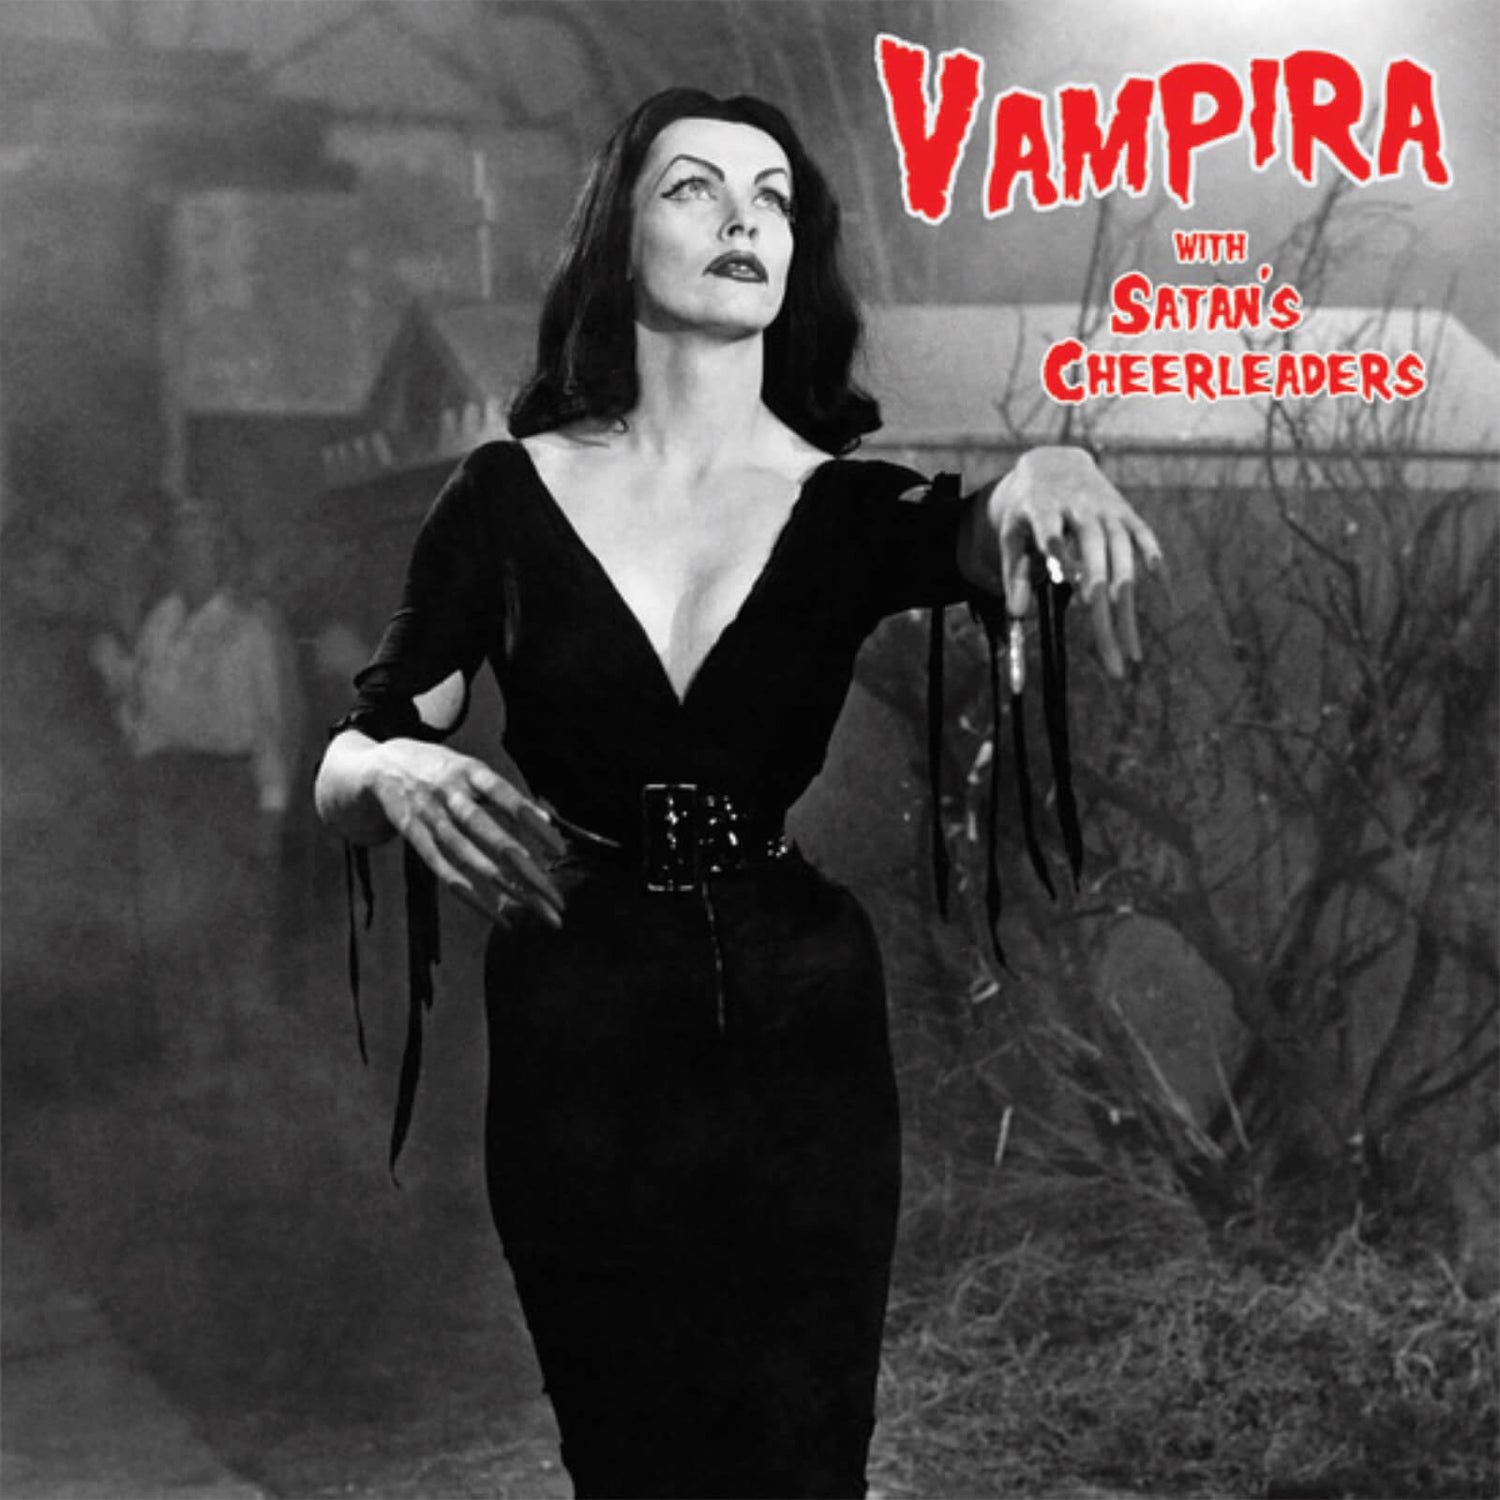 Vampira With Satan's Cheerleaders - Vampira With Satan's Cheerleaders Vinyl (Blood Red)